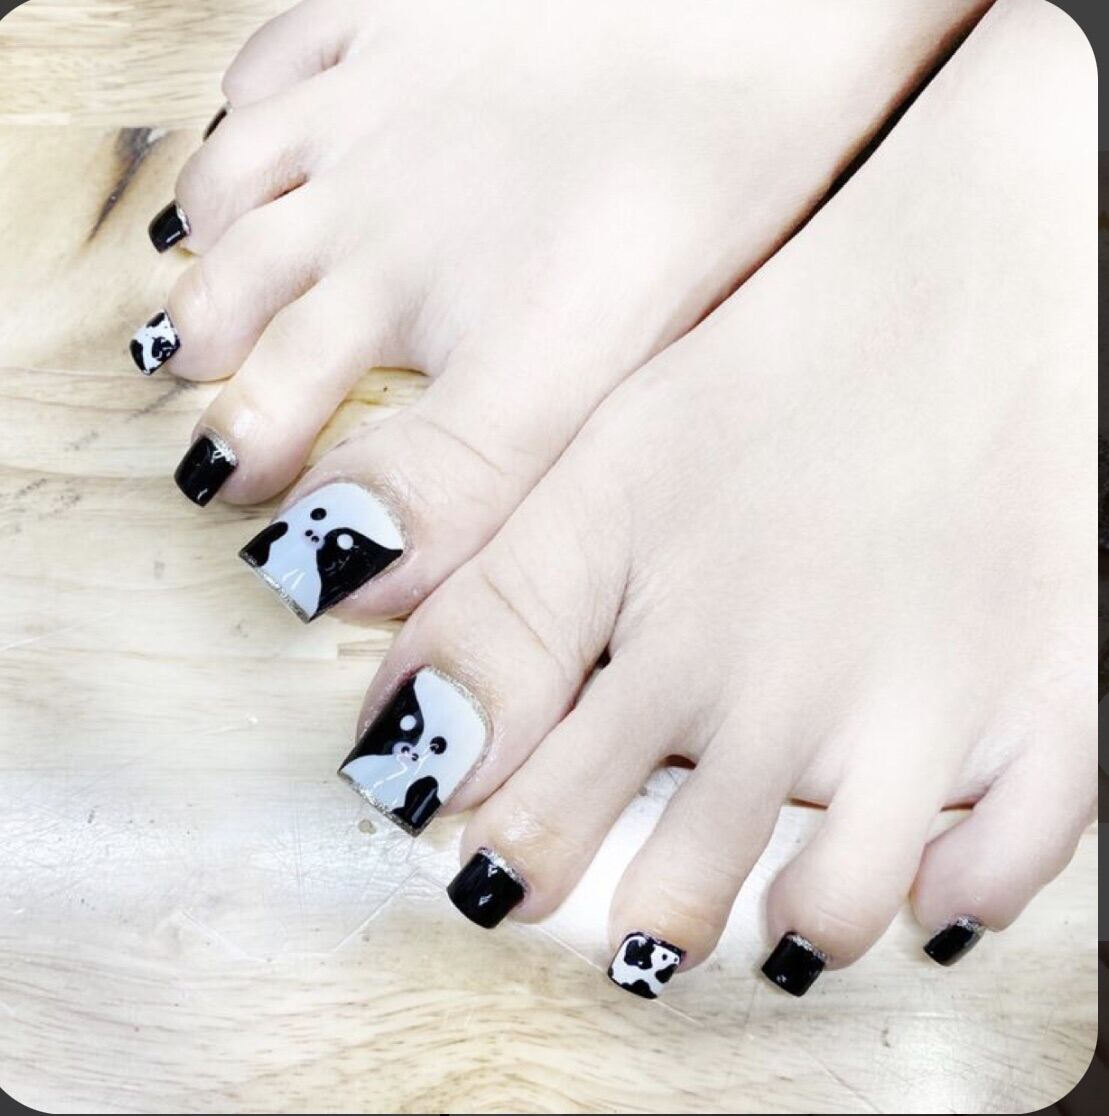 Mách bạn nhiều hơn 95 mẫu nail chân đẹp màu đen hay nhất  Tin học Đông Hòa